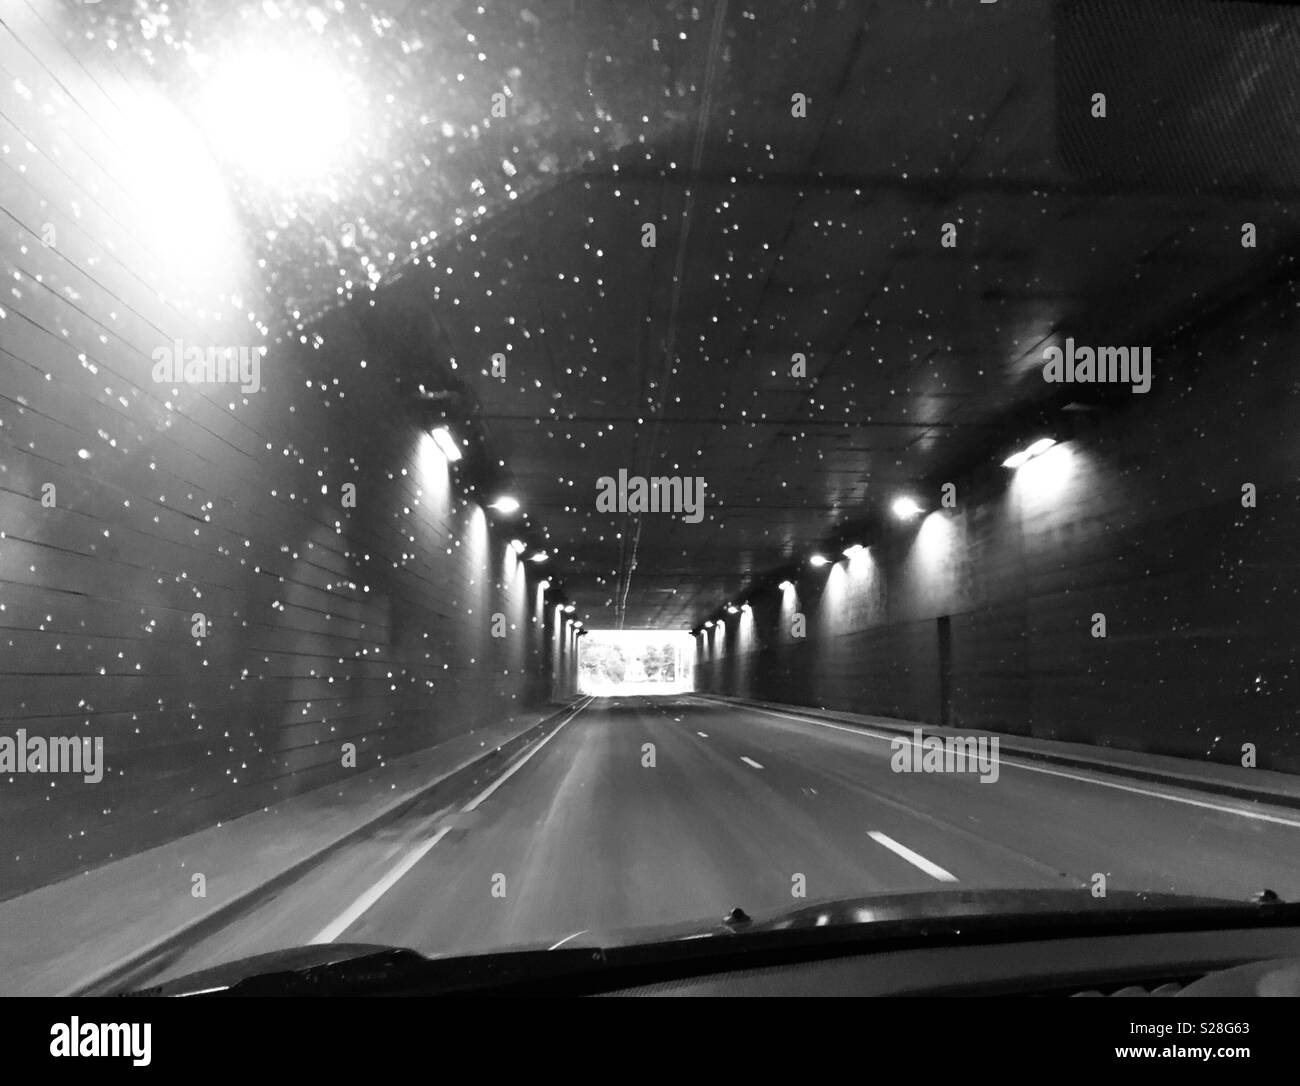 Fahren durch einen Tunnel mit Regentropfen auf der Windschutzscheibe Stockfoto